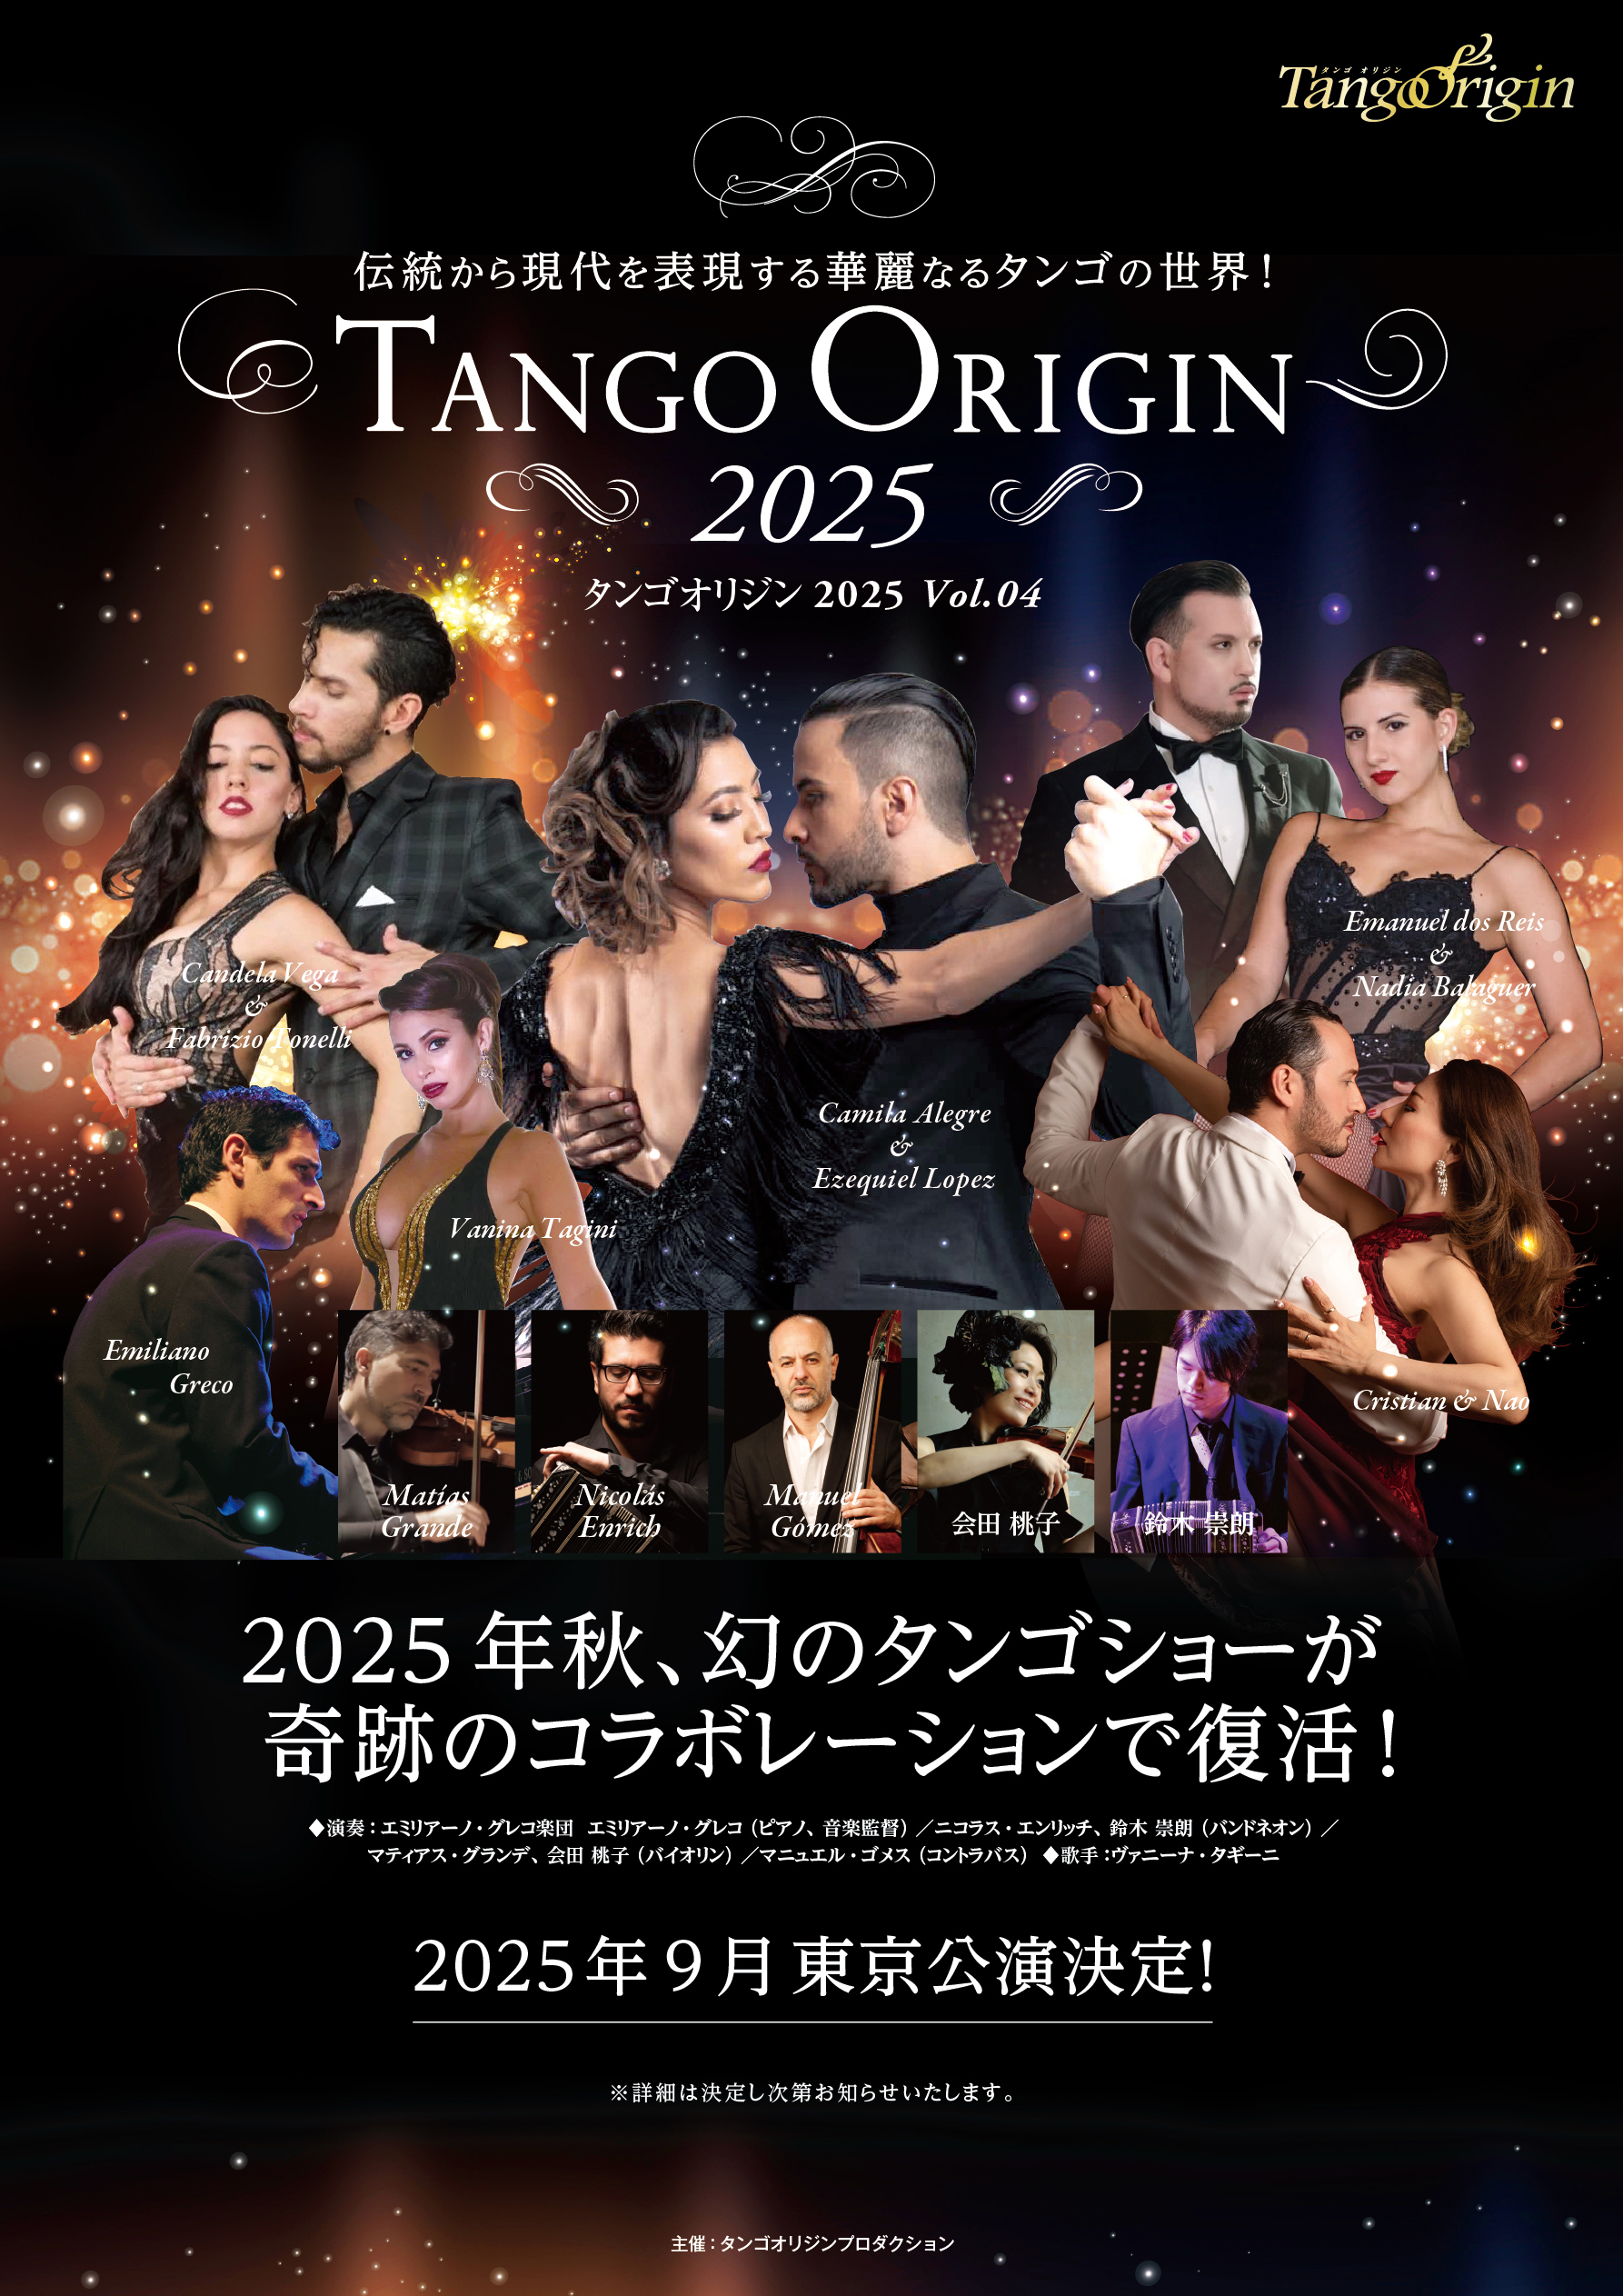 本場ブエノスアイレス、日本のトップ・アーティストが再び集結！
情愛と官能のアルゼンチンタンゴ、究極のステージ
「TANGO ORIGIN 2025」を2025年9月に全国で開催